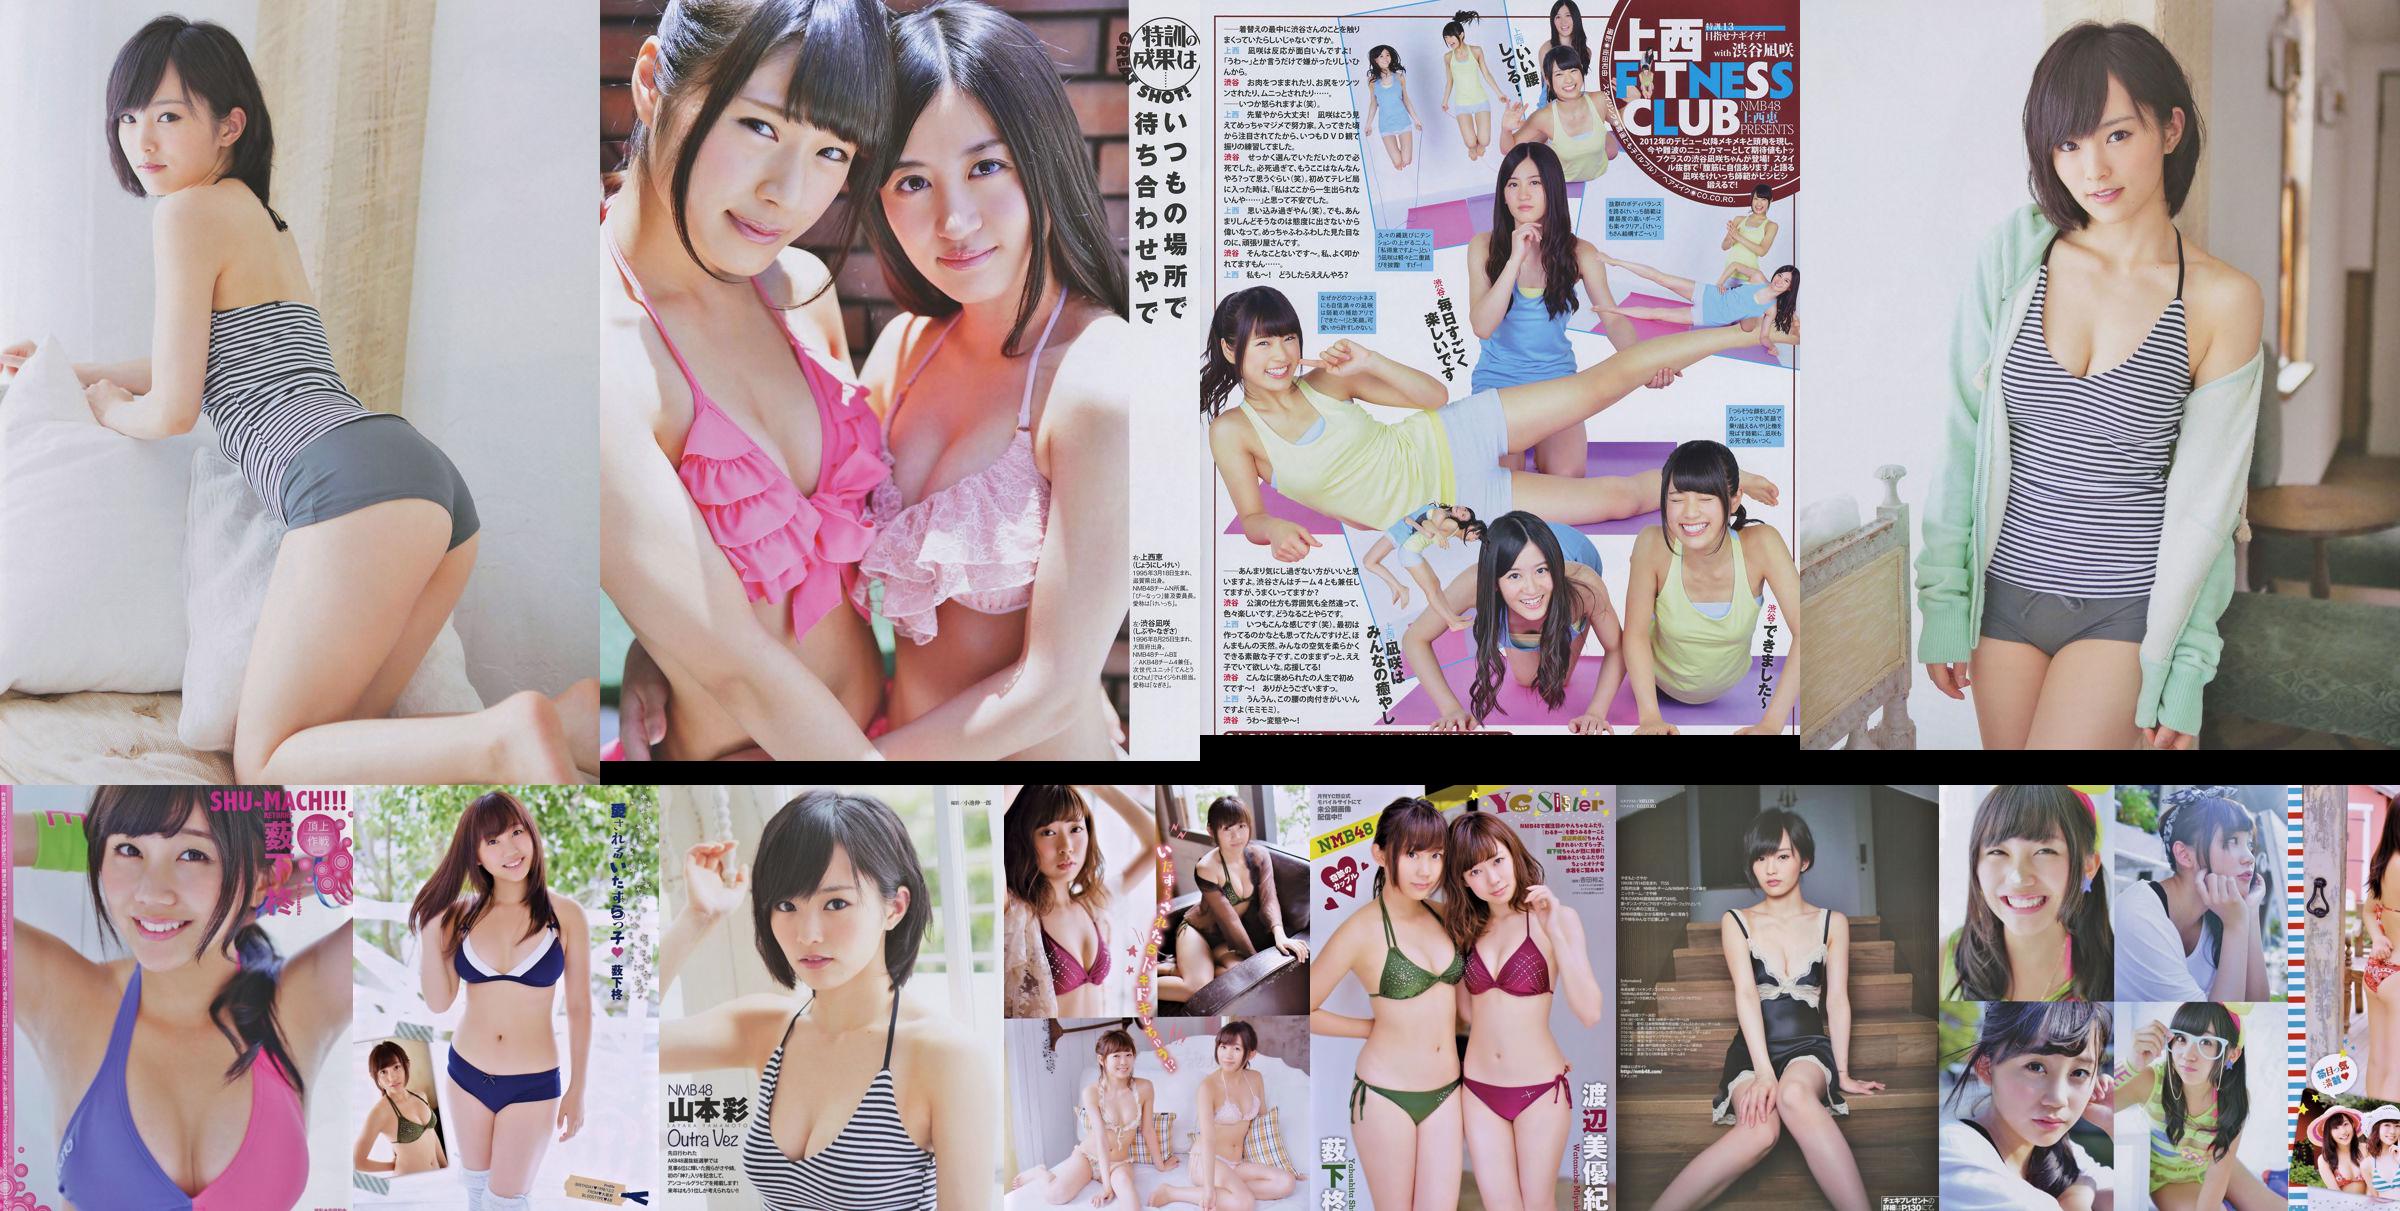 [Jonge kampioen Retsu] Shu Yabushita Miyuki Watanabe 2014 nr. 10 foto No.ae97b6 Pagina 1